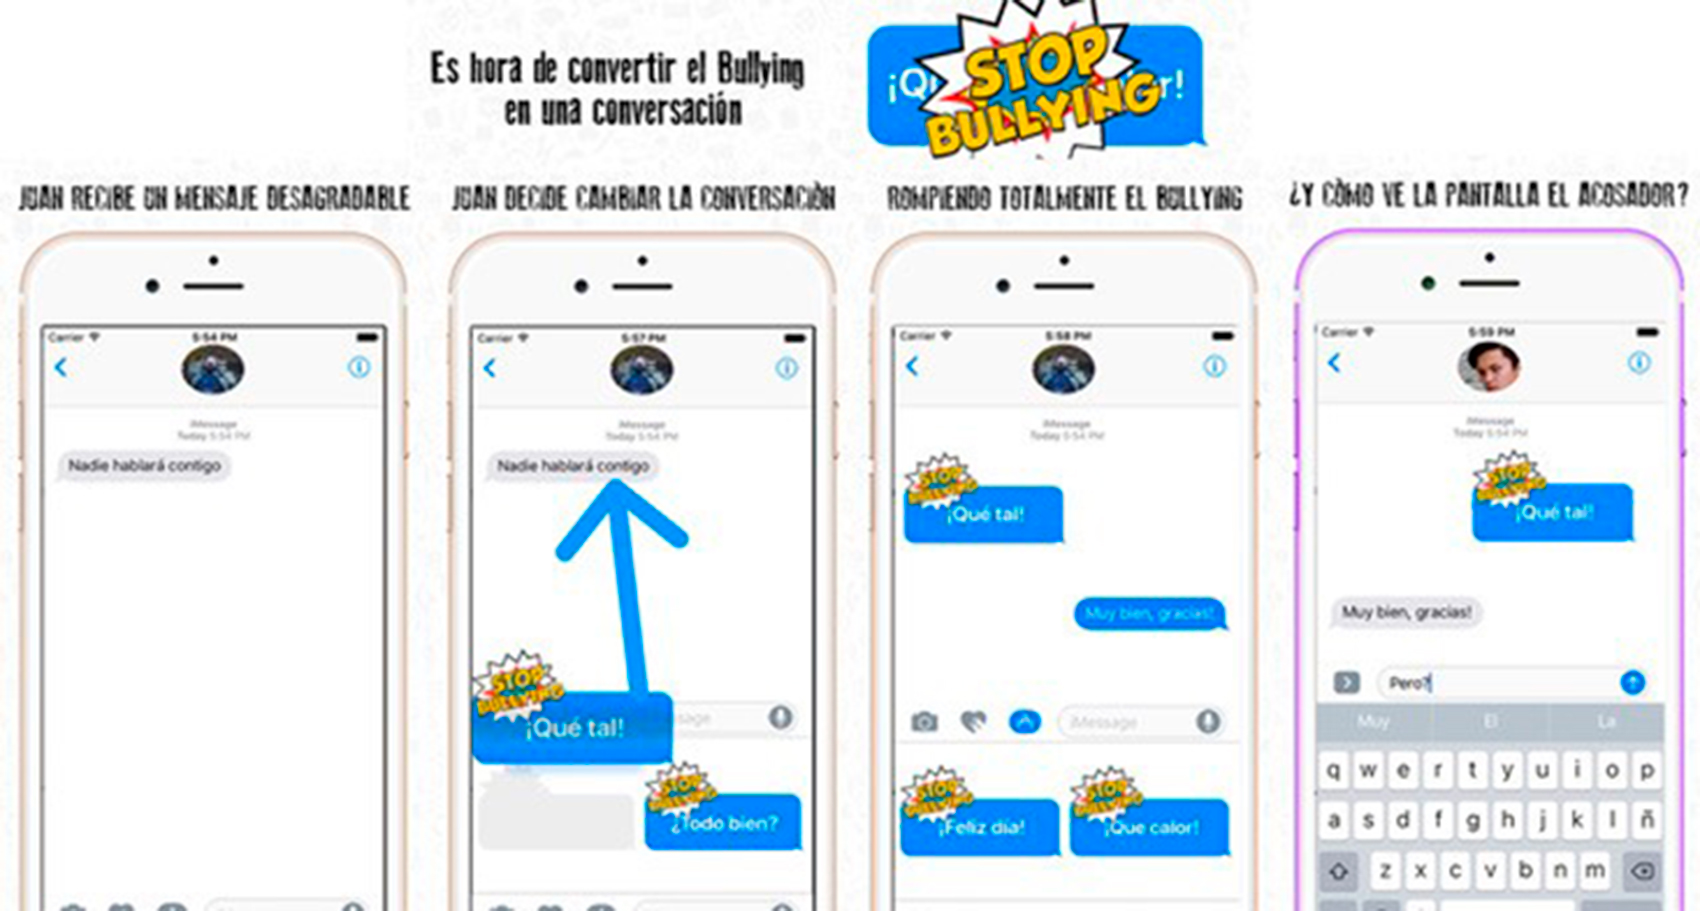 RompeBullying es una iniciativa de TokApp que convierte los mensajes ofensivos en textos agradables entre vctima y acosador...